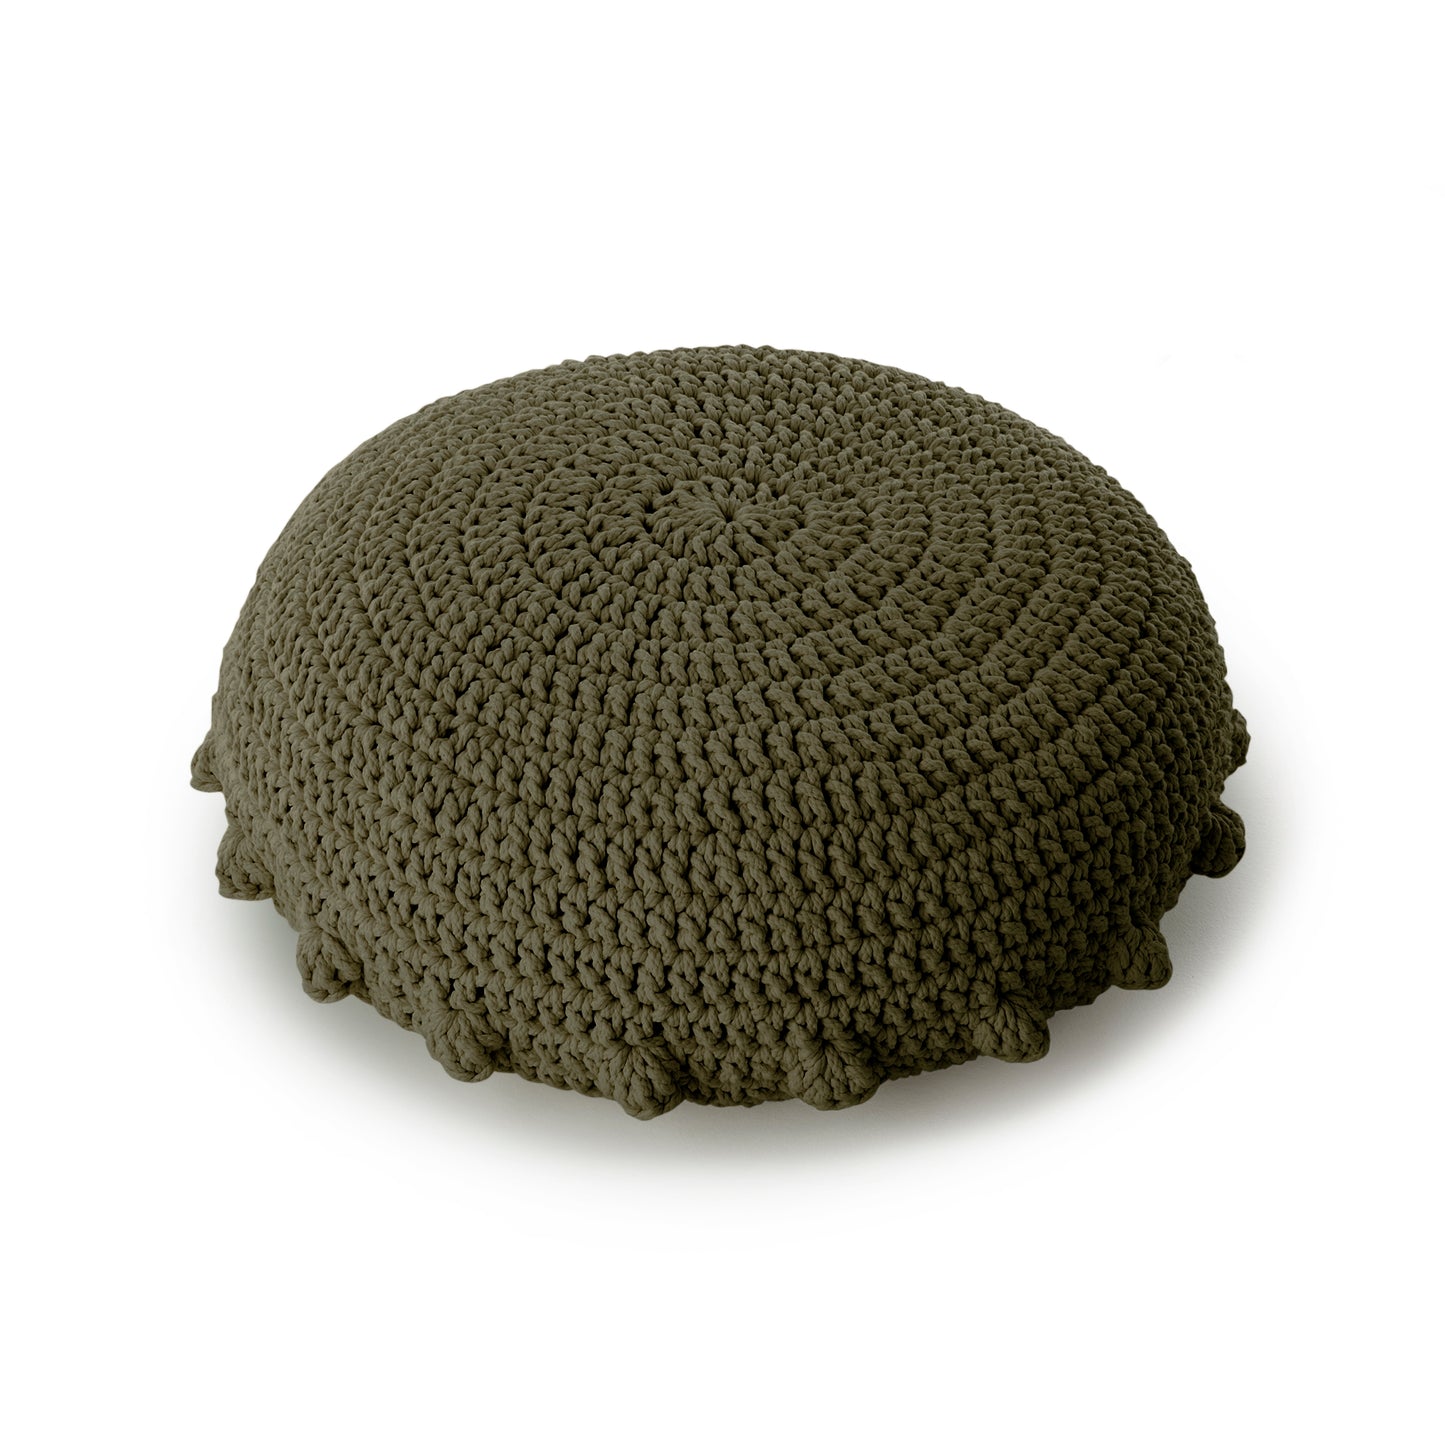 Puff Disco em crochê Verde, com fio 100% algodão.  Fechamento com zíper, possibilitando a remoção da capa para lavagem.  Dimensões: Altura - 20cm; Diâmetro - 85cm. 